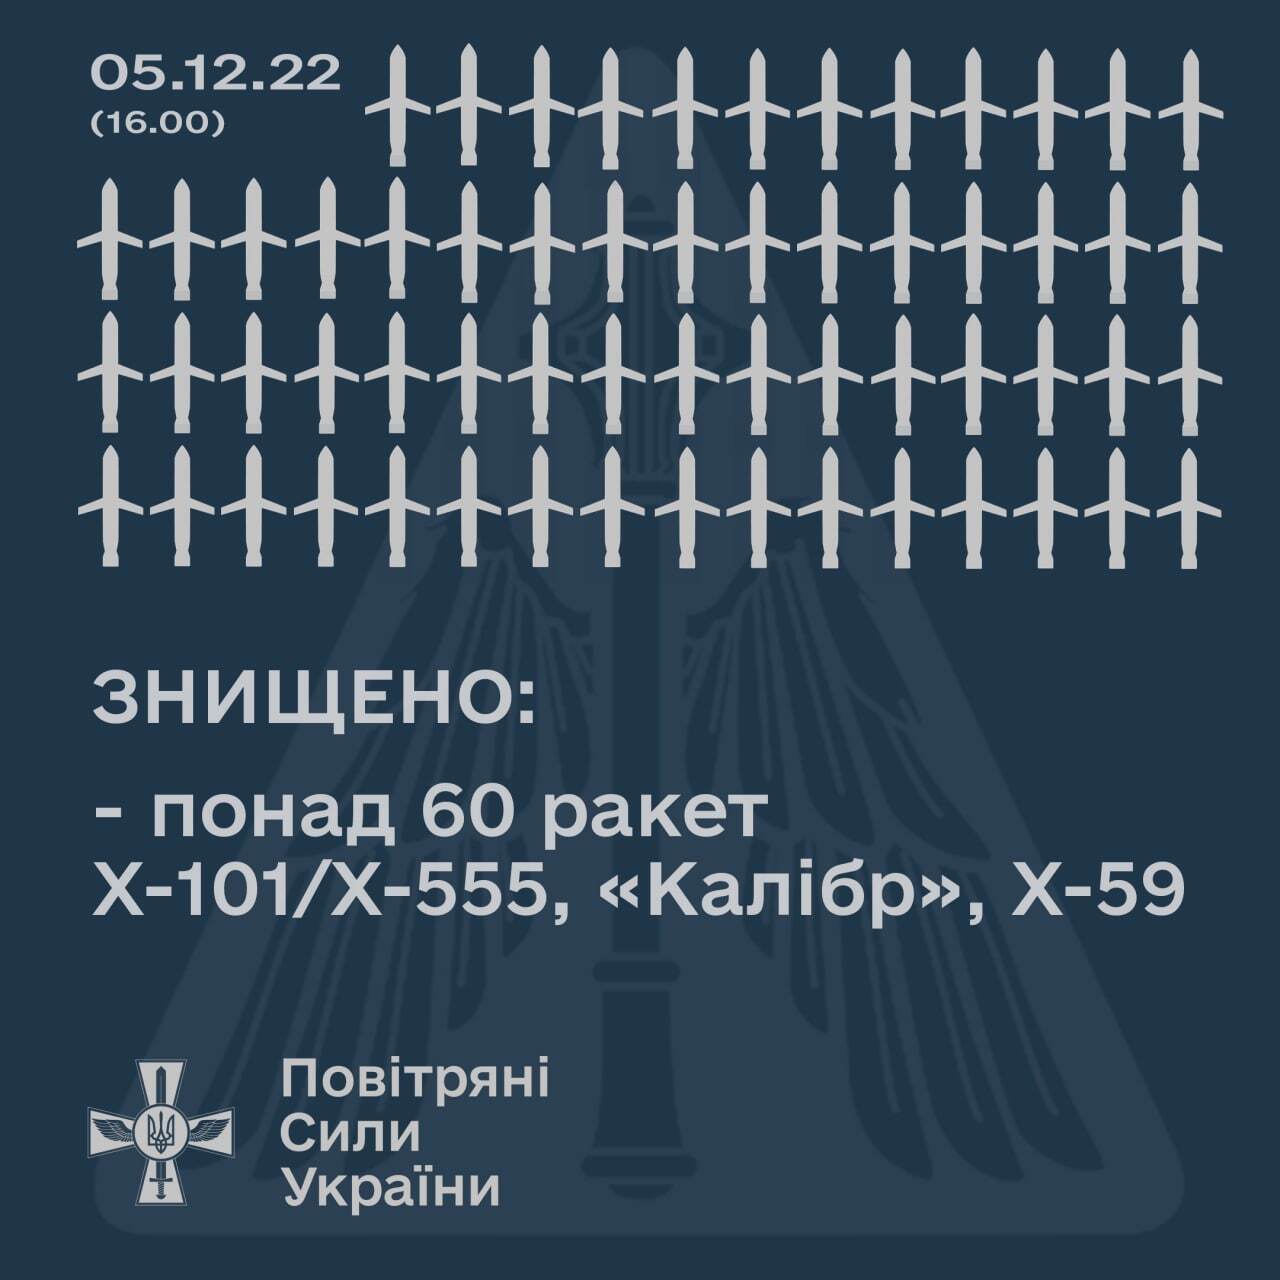 Количество ракет, сбитых во время атаки 5 декабря